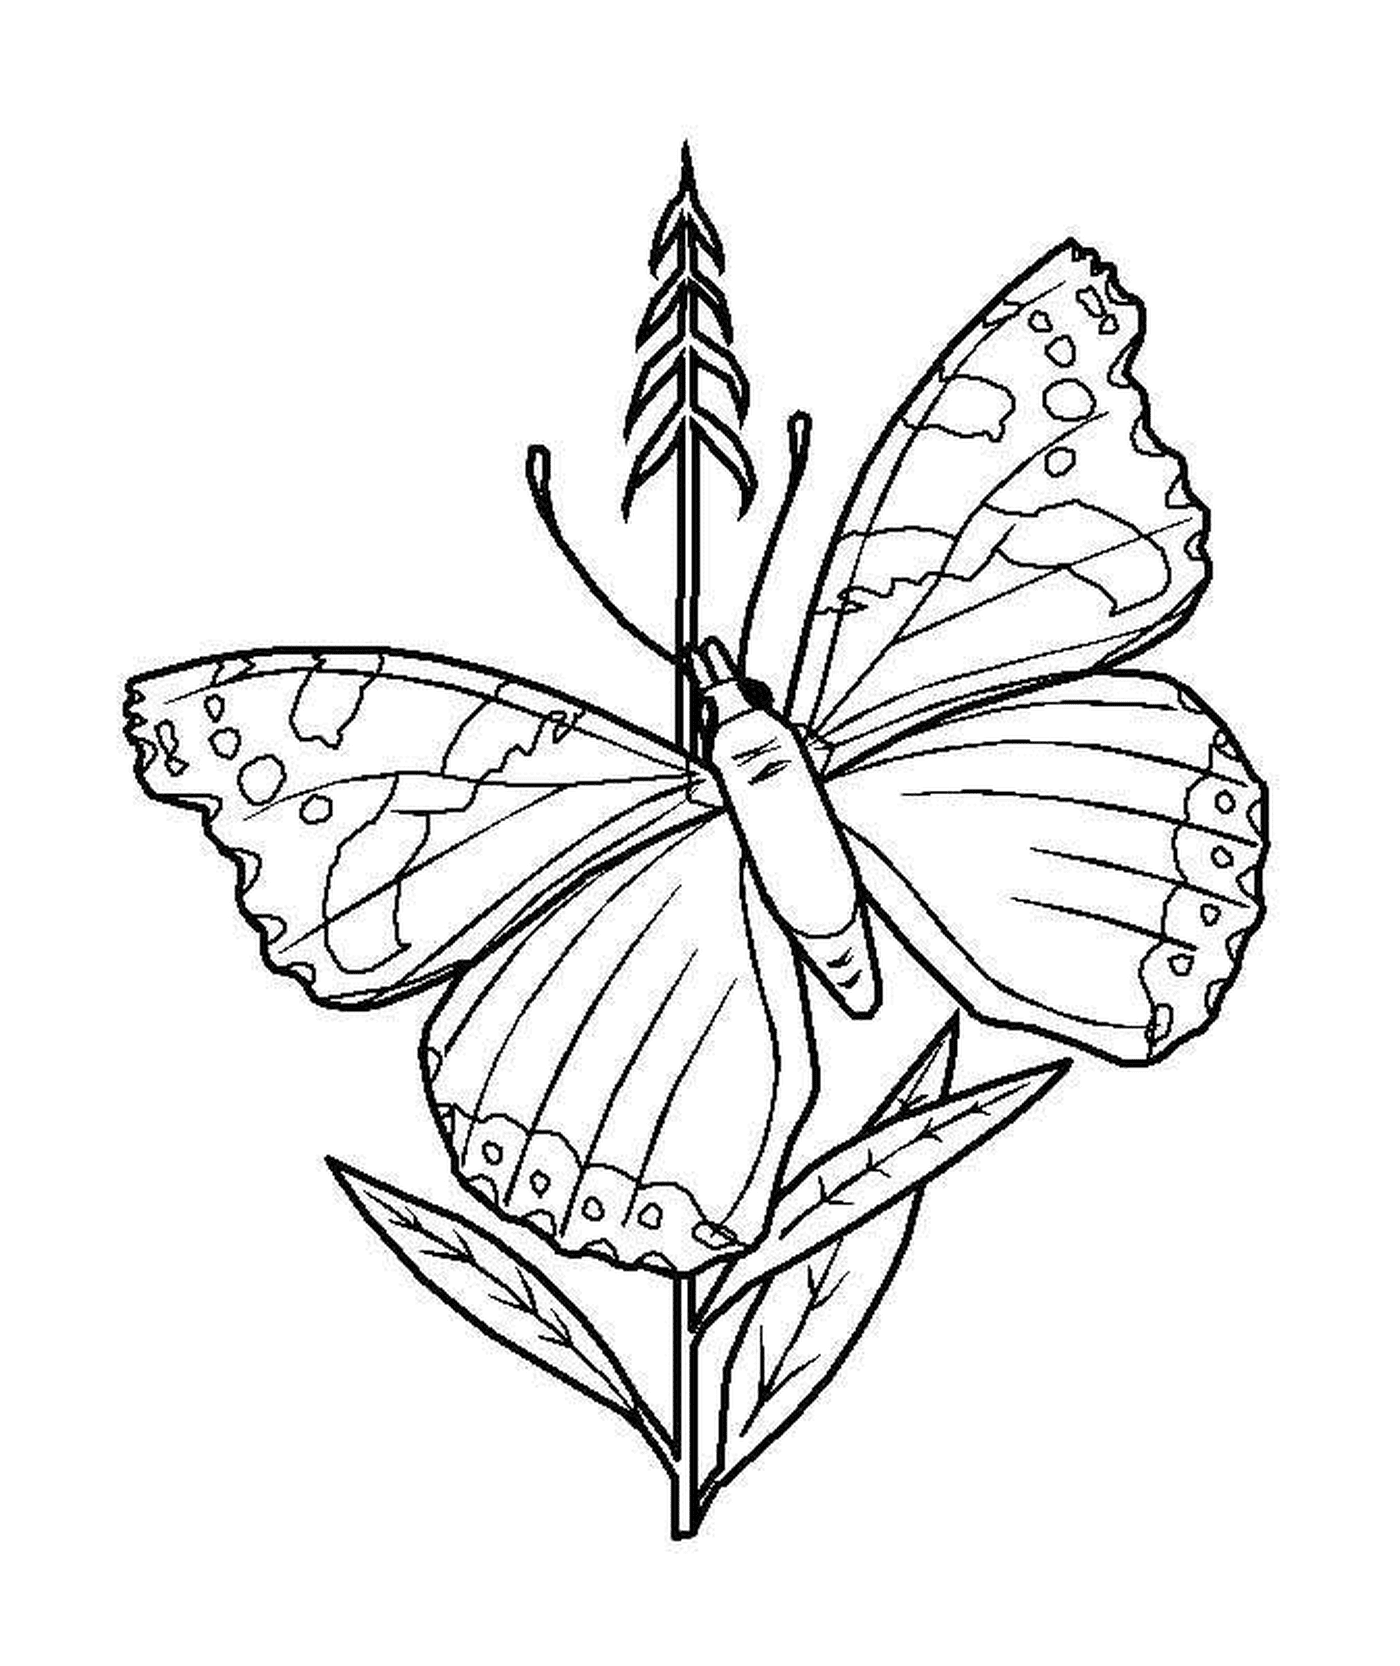  Mariposa colocada sobre el tallo 